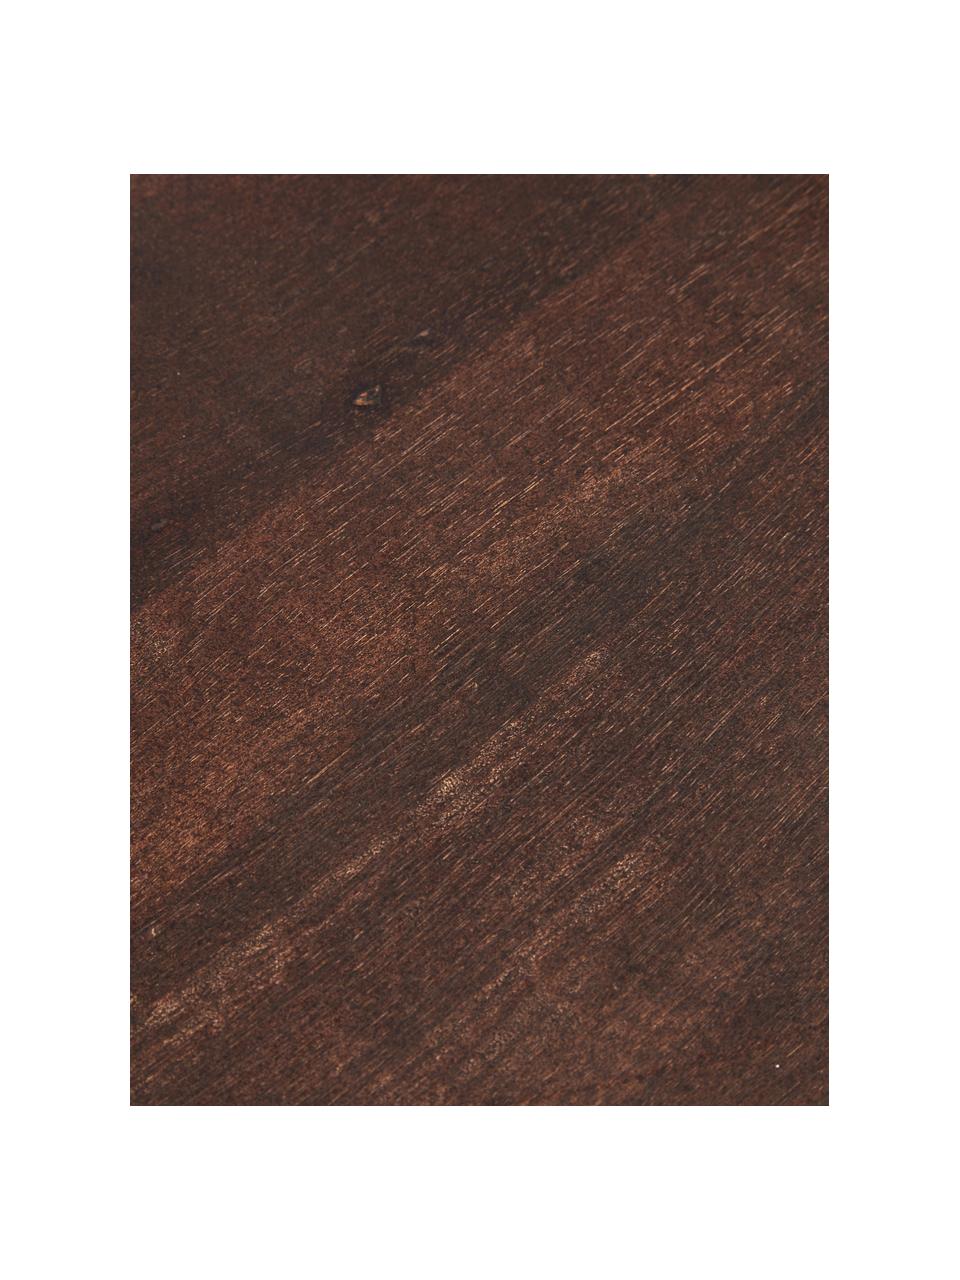 Mangoholz-Wandregal Porter, Regalboden: Massives Mangoholz, lacki, Mangoholz,, Goldfarben, 60 x 24 cm